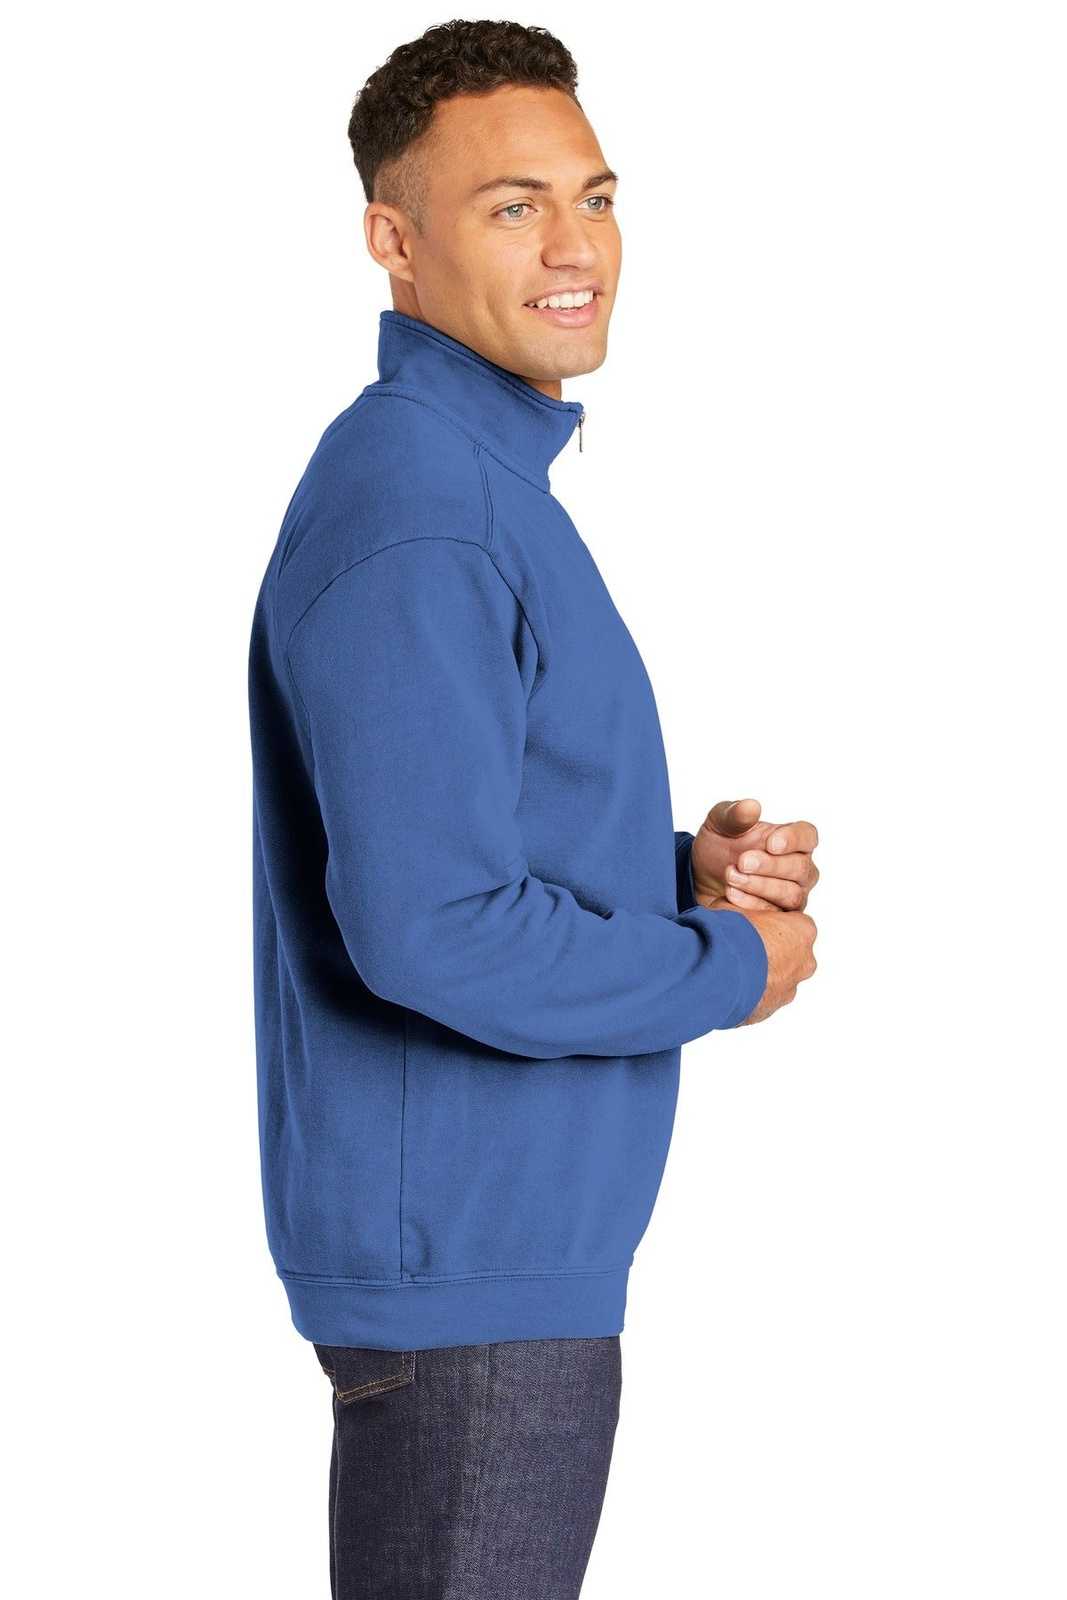 Comfort Colors 1580 Ring Spun 1/4-Zip Sweatshirt - Flo Blue - HIT a Double